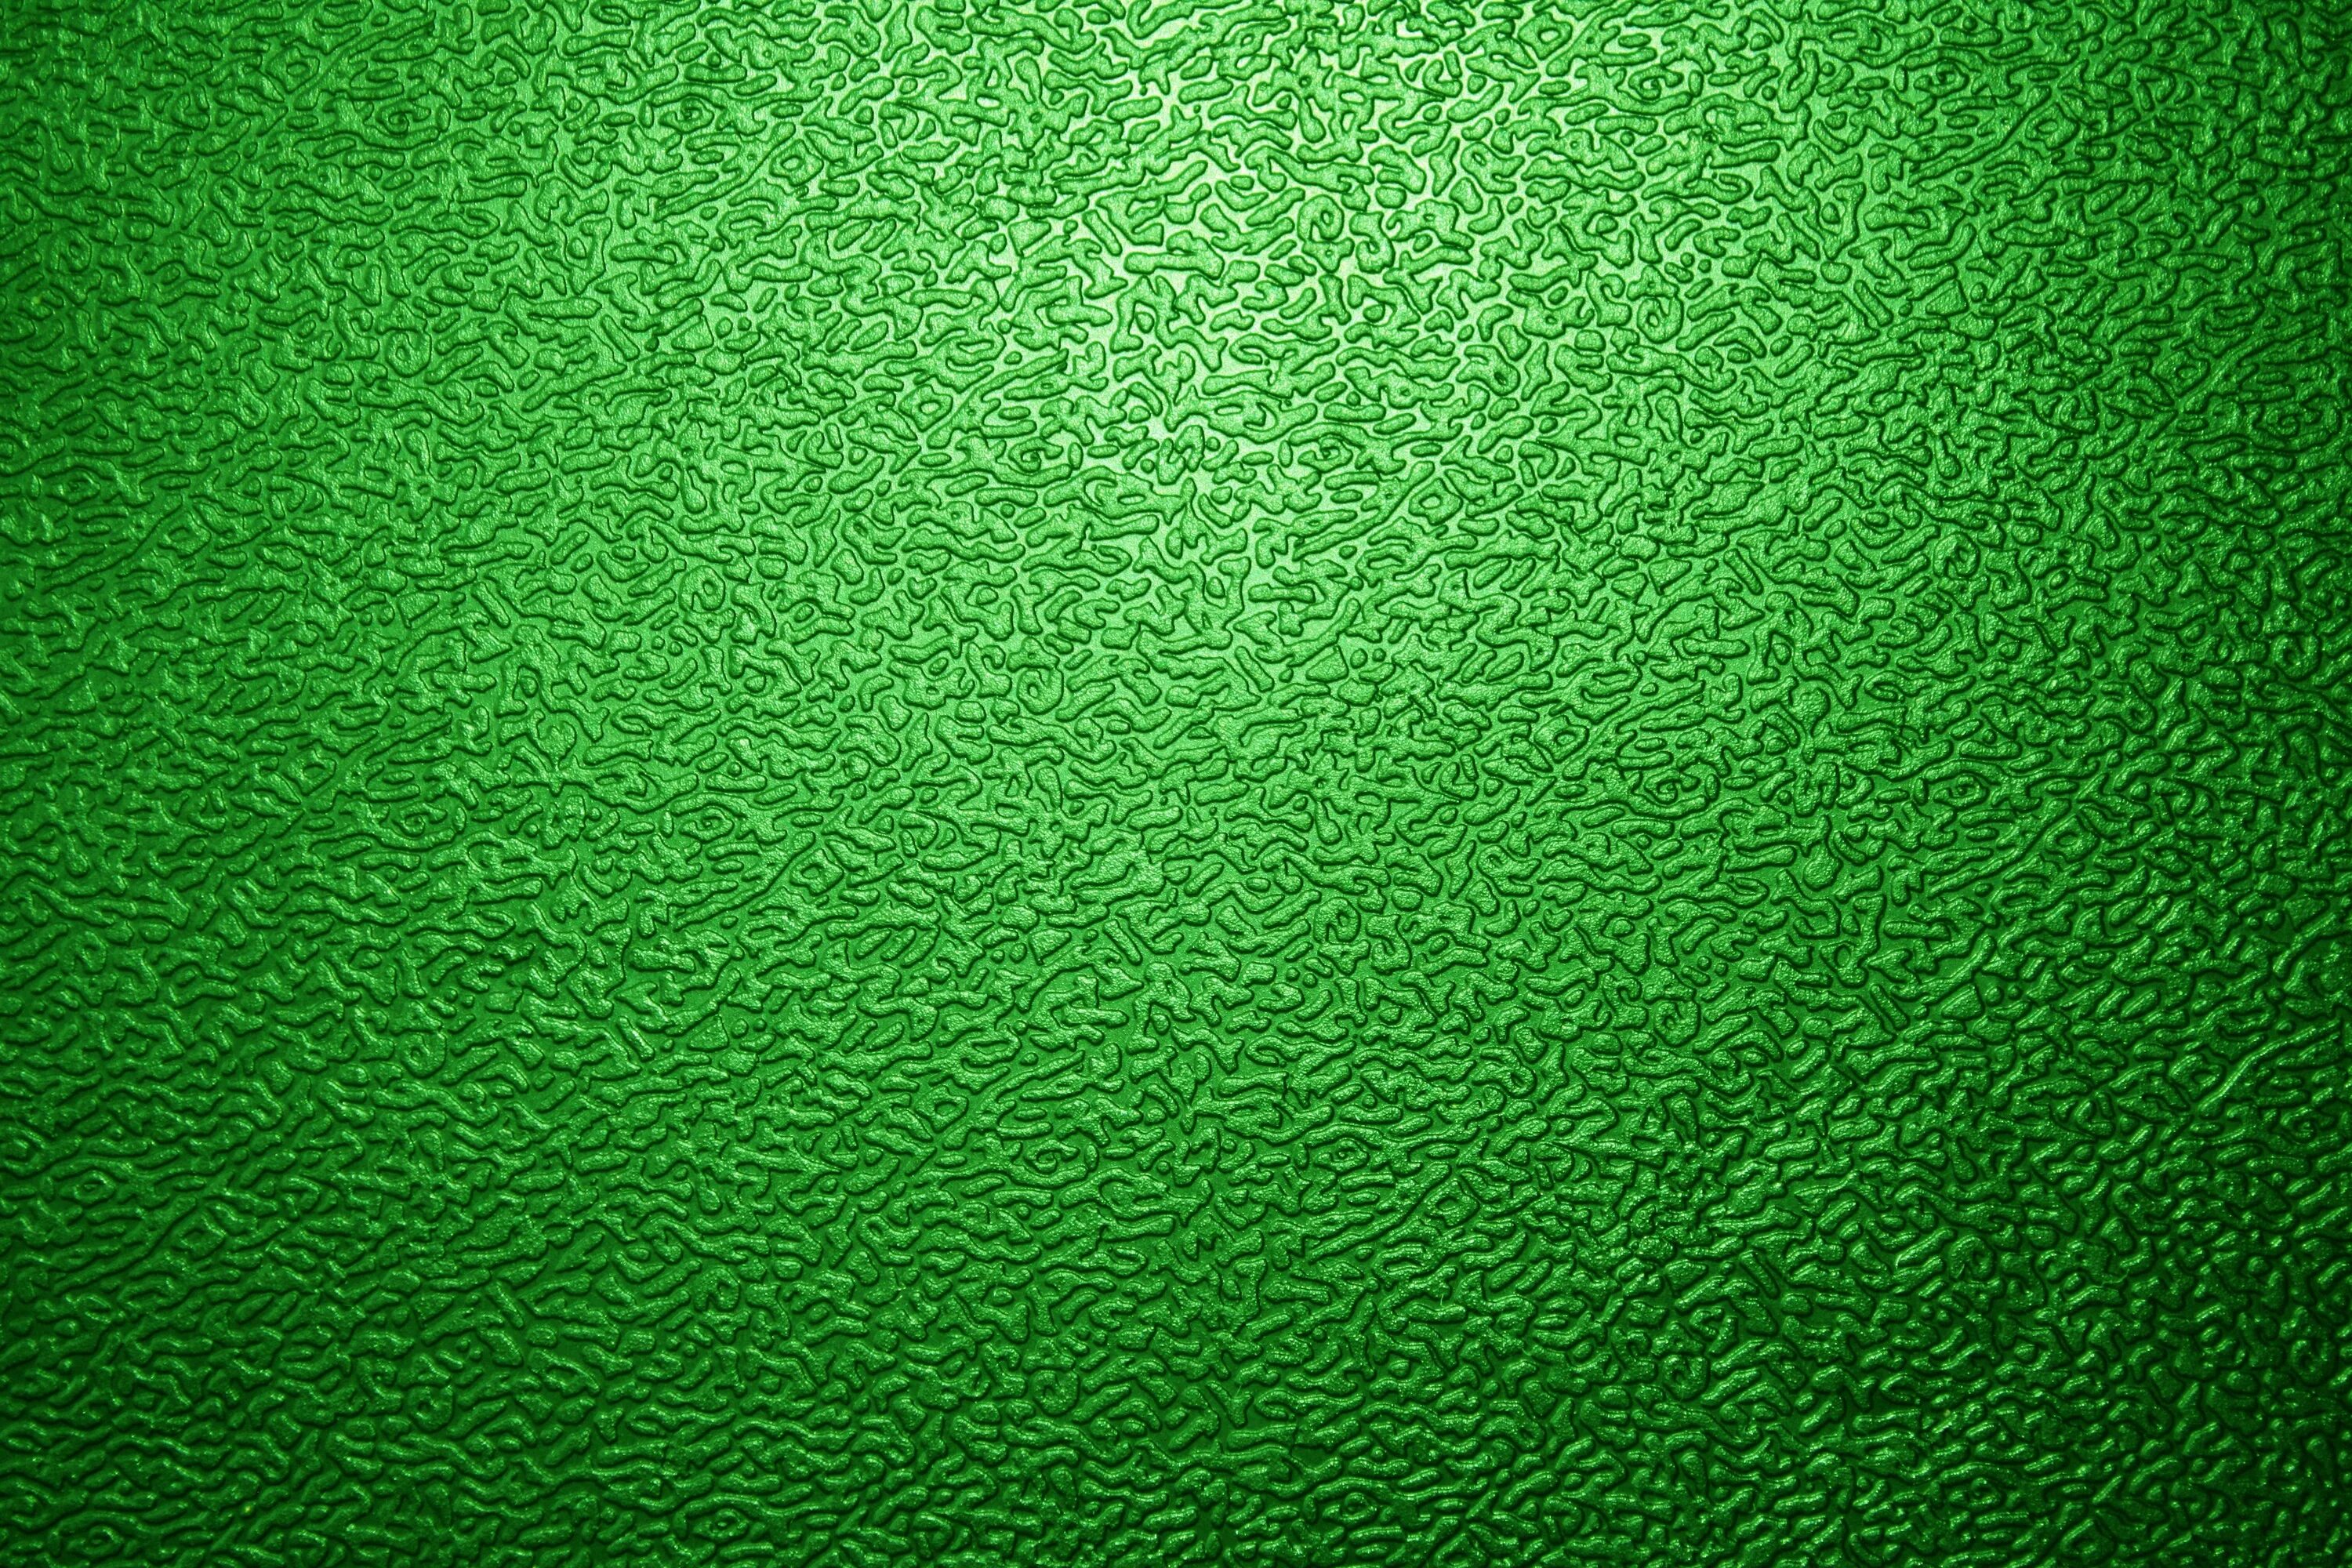 Зеленый на каком фоне. Зеленый фон с узорами. Зеленый фон с орнаментом. Орнаменты на салатовом фоне. Красивый зеленый цвет.